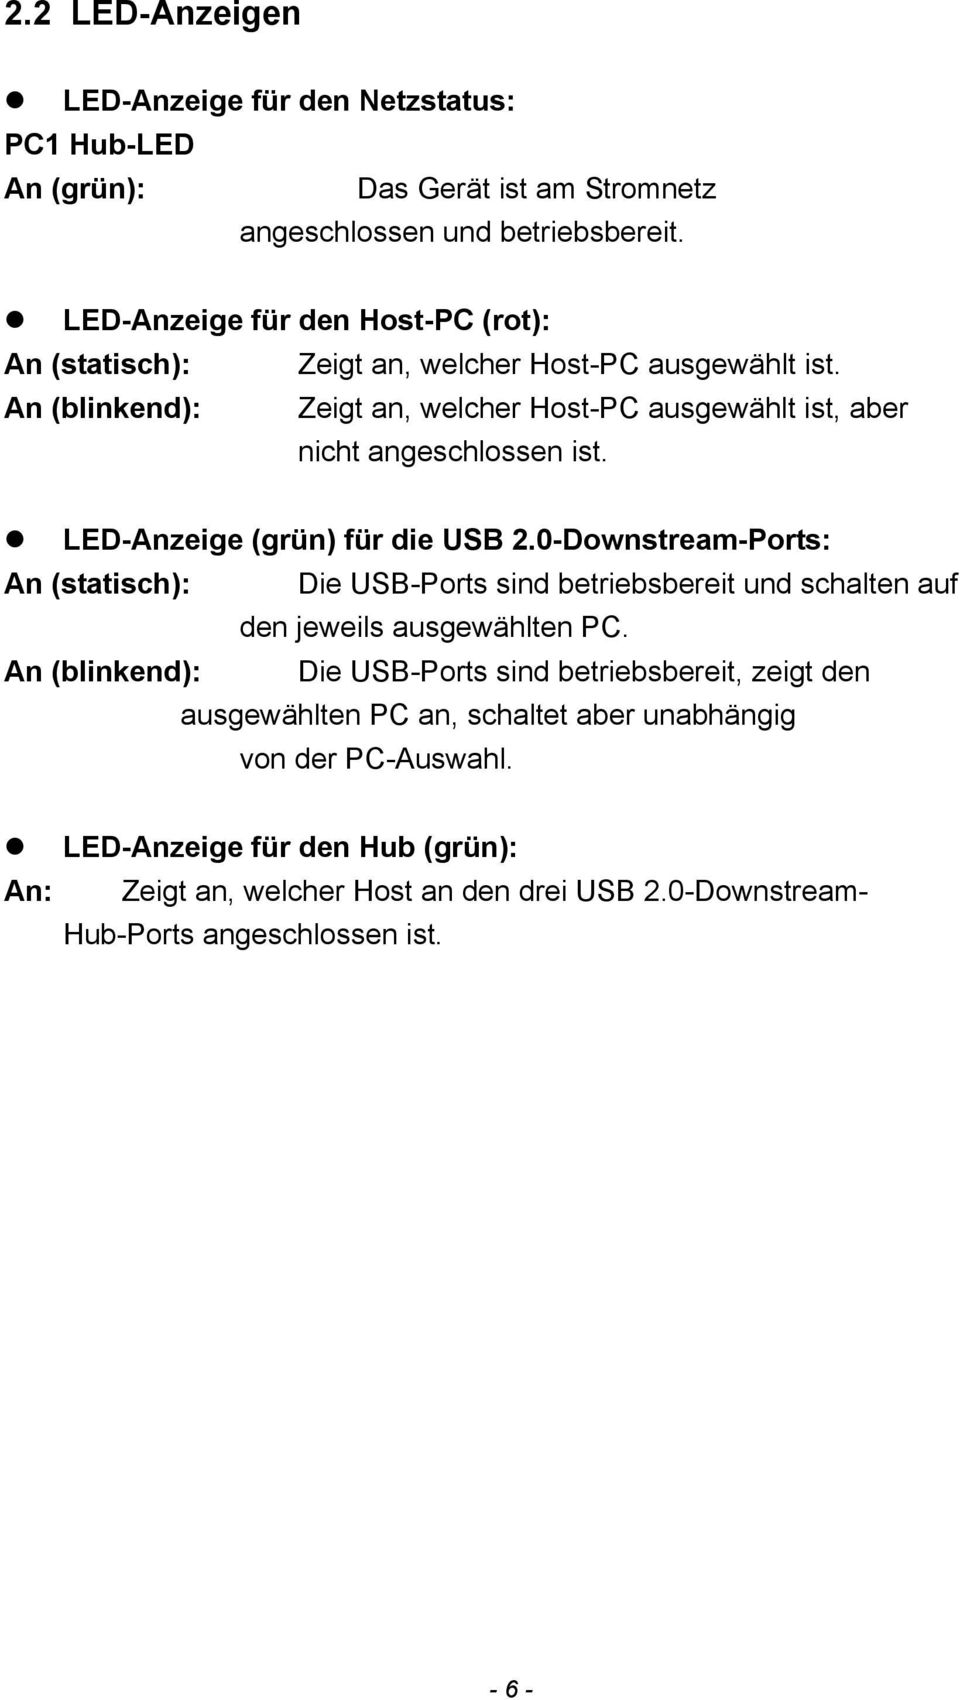 LED-Anzeige (grün) für die USB 2.0-Downstream-Ports: An (statisch): Die USB-Ports sind betriebsbereit und schalten auf den jeweils ausgewählten PC.